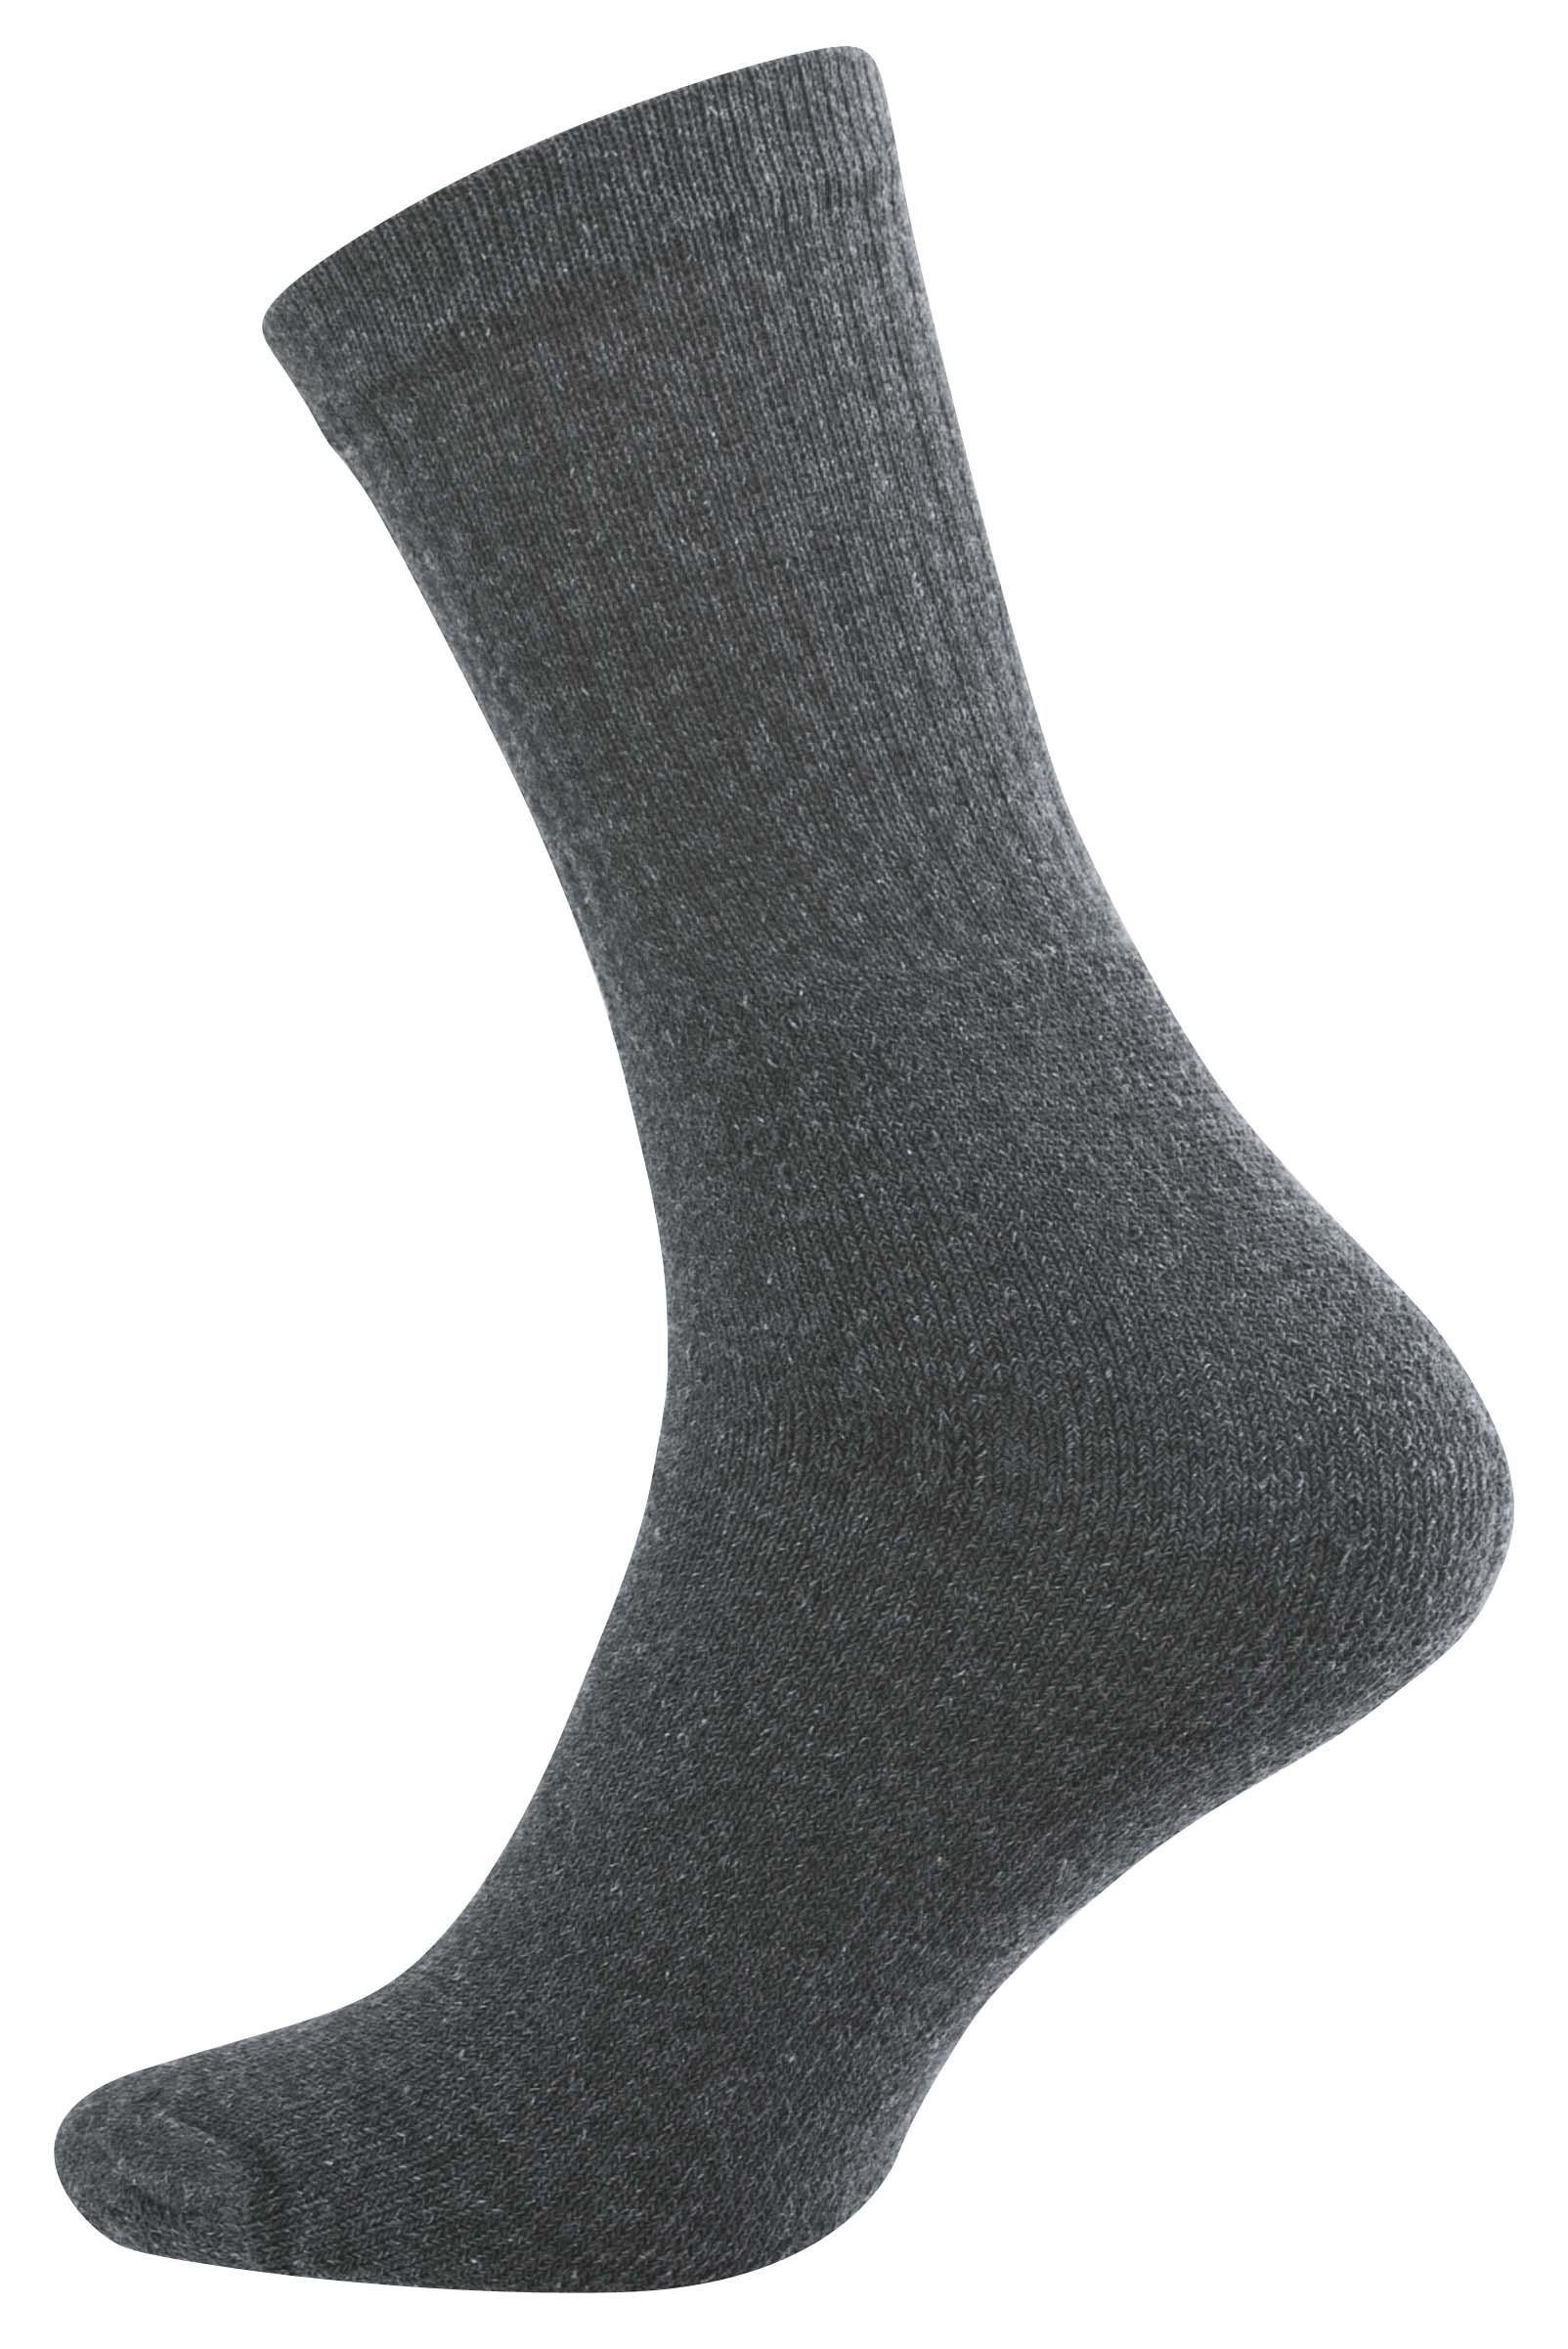 10 Paar STABILE Baumwoll Socken - Berufssocken, günstig